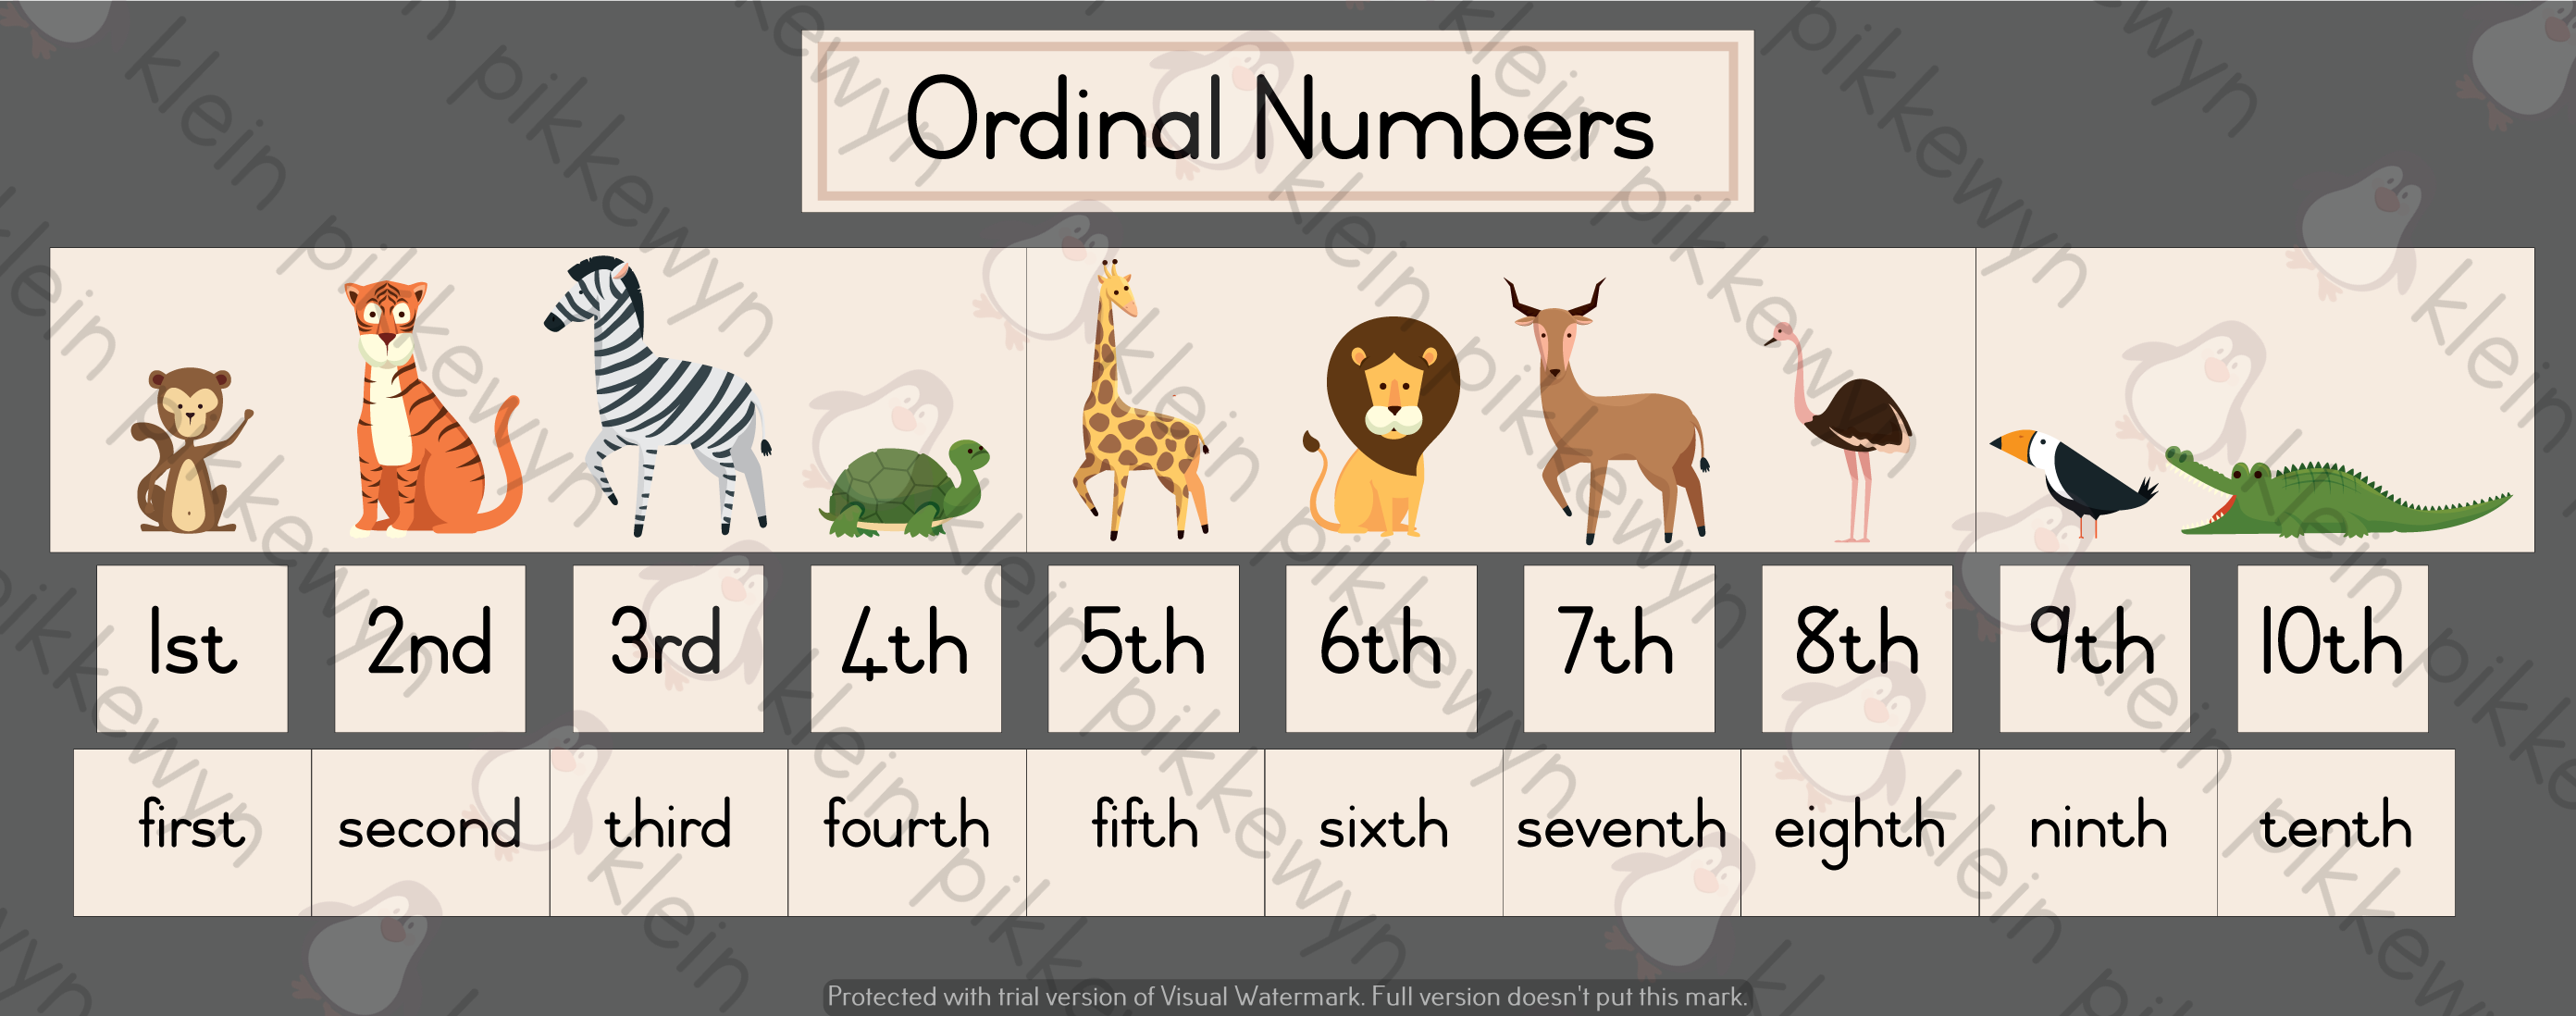 Ordinal Numbers Worksheet 1 To 10 Ordinal Numbers Numbers Free Printable English Ordinal 